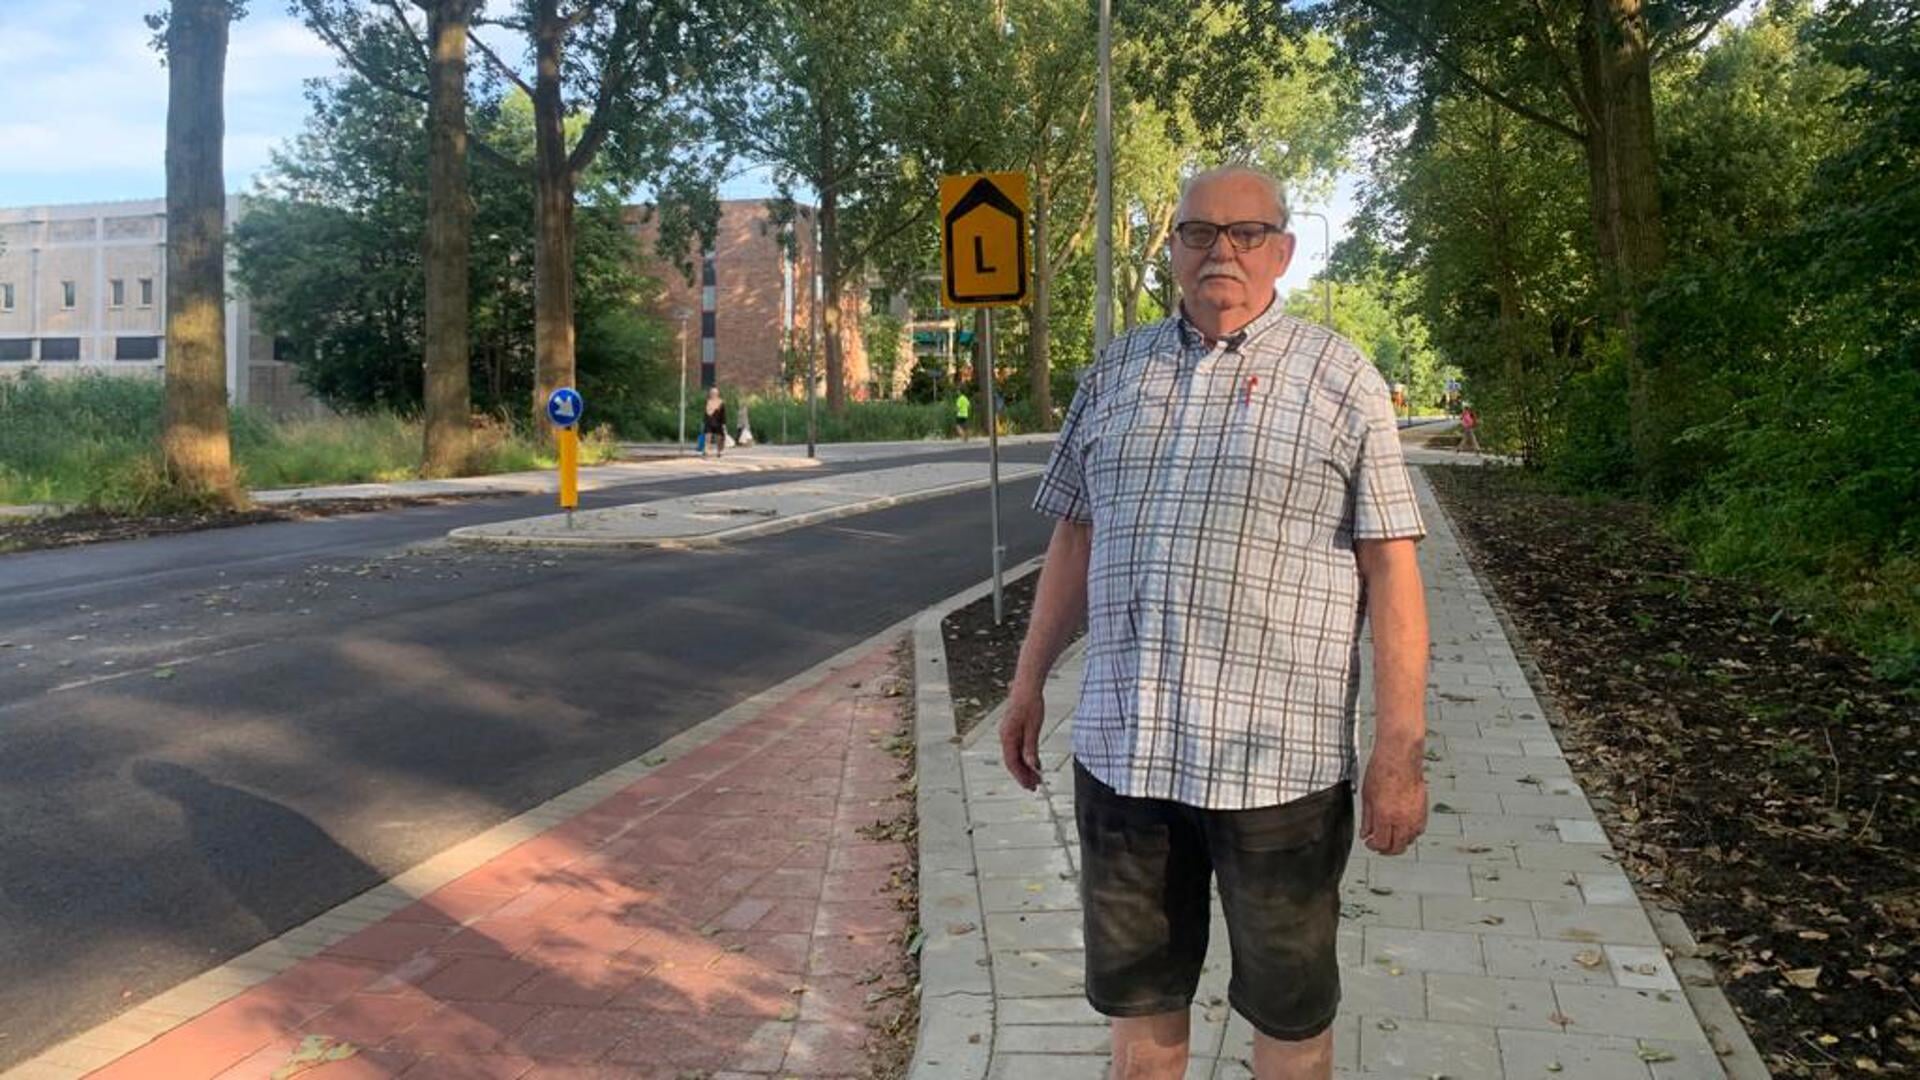 Bewoner Tom van der Valk maakt zich zorgen om de verkeersveiligheid op het heringerichte deel van de Ridder van Catsweg. Hier buigt het fietspad de weg op. 